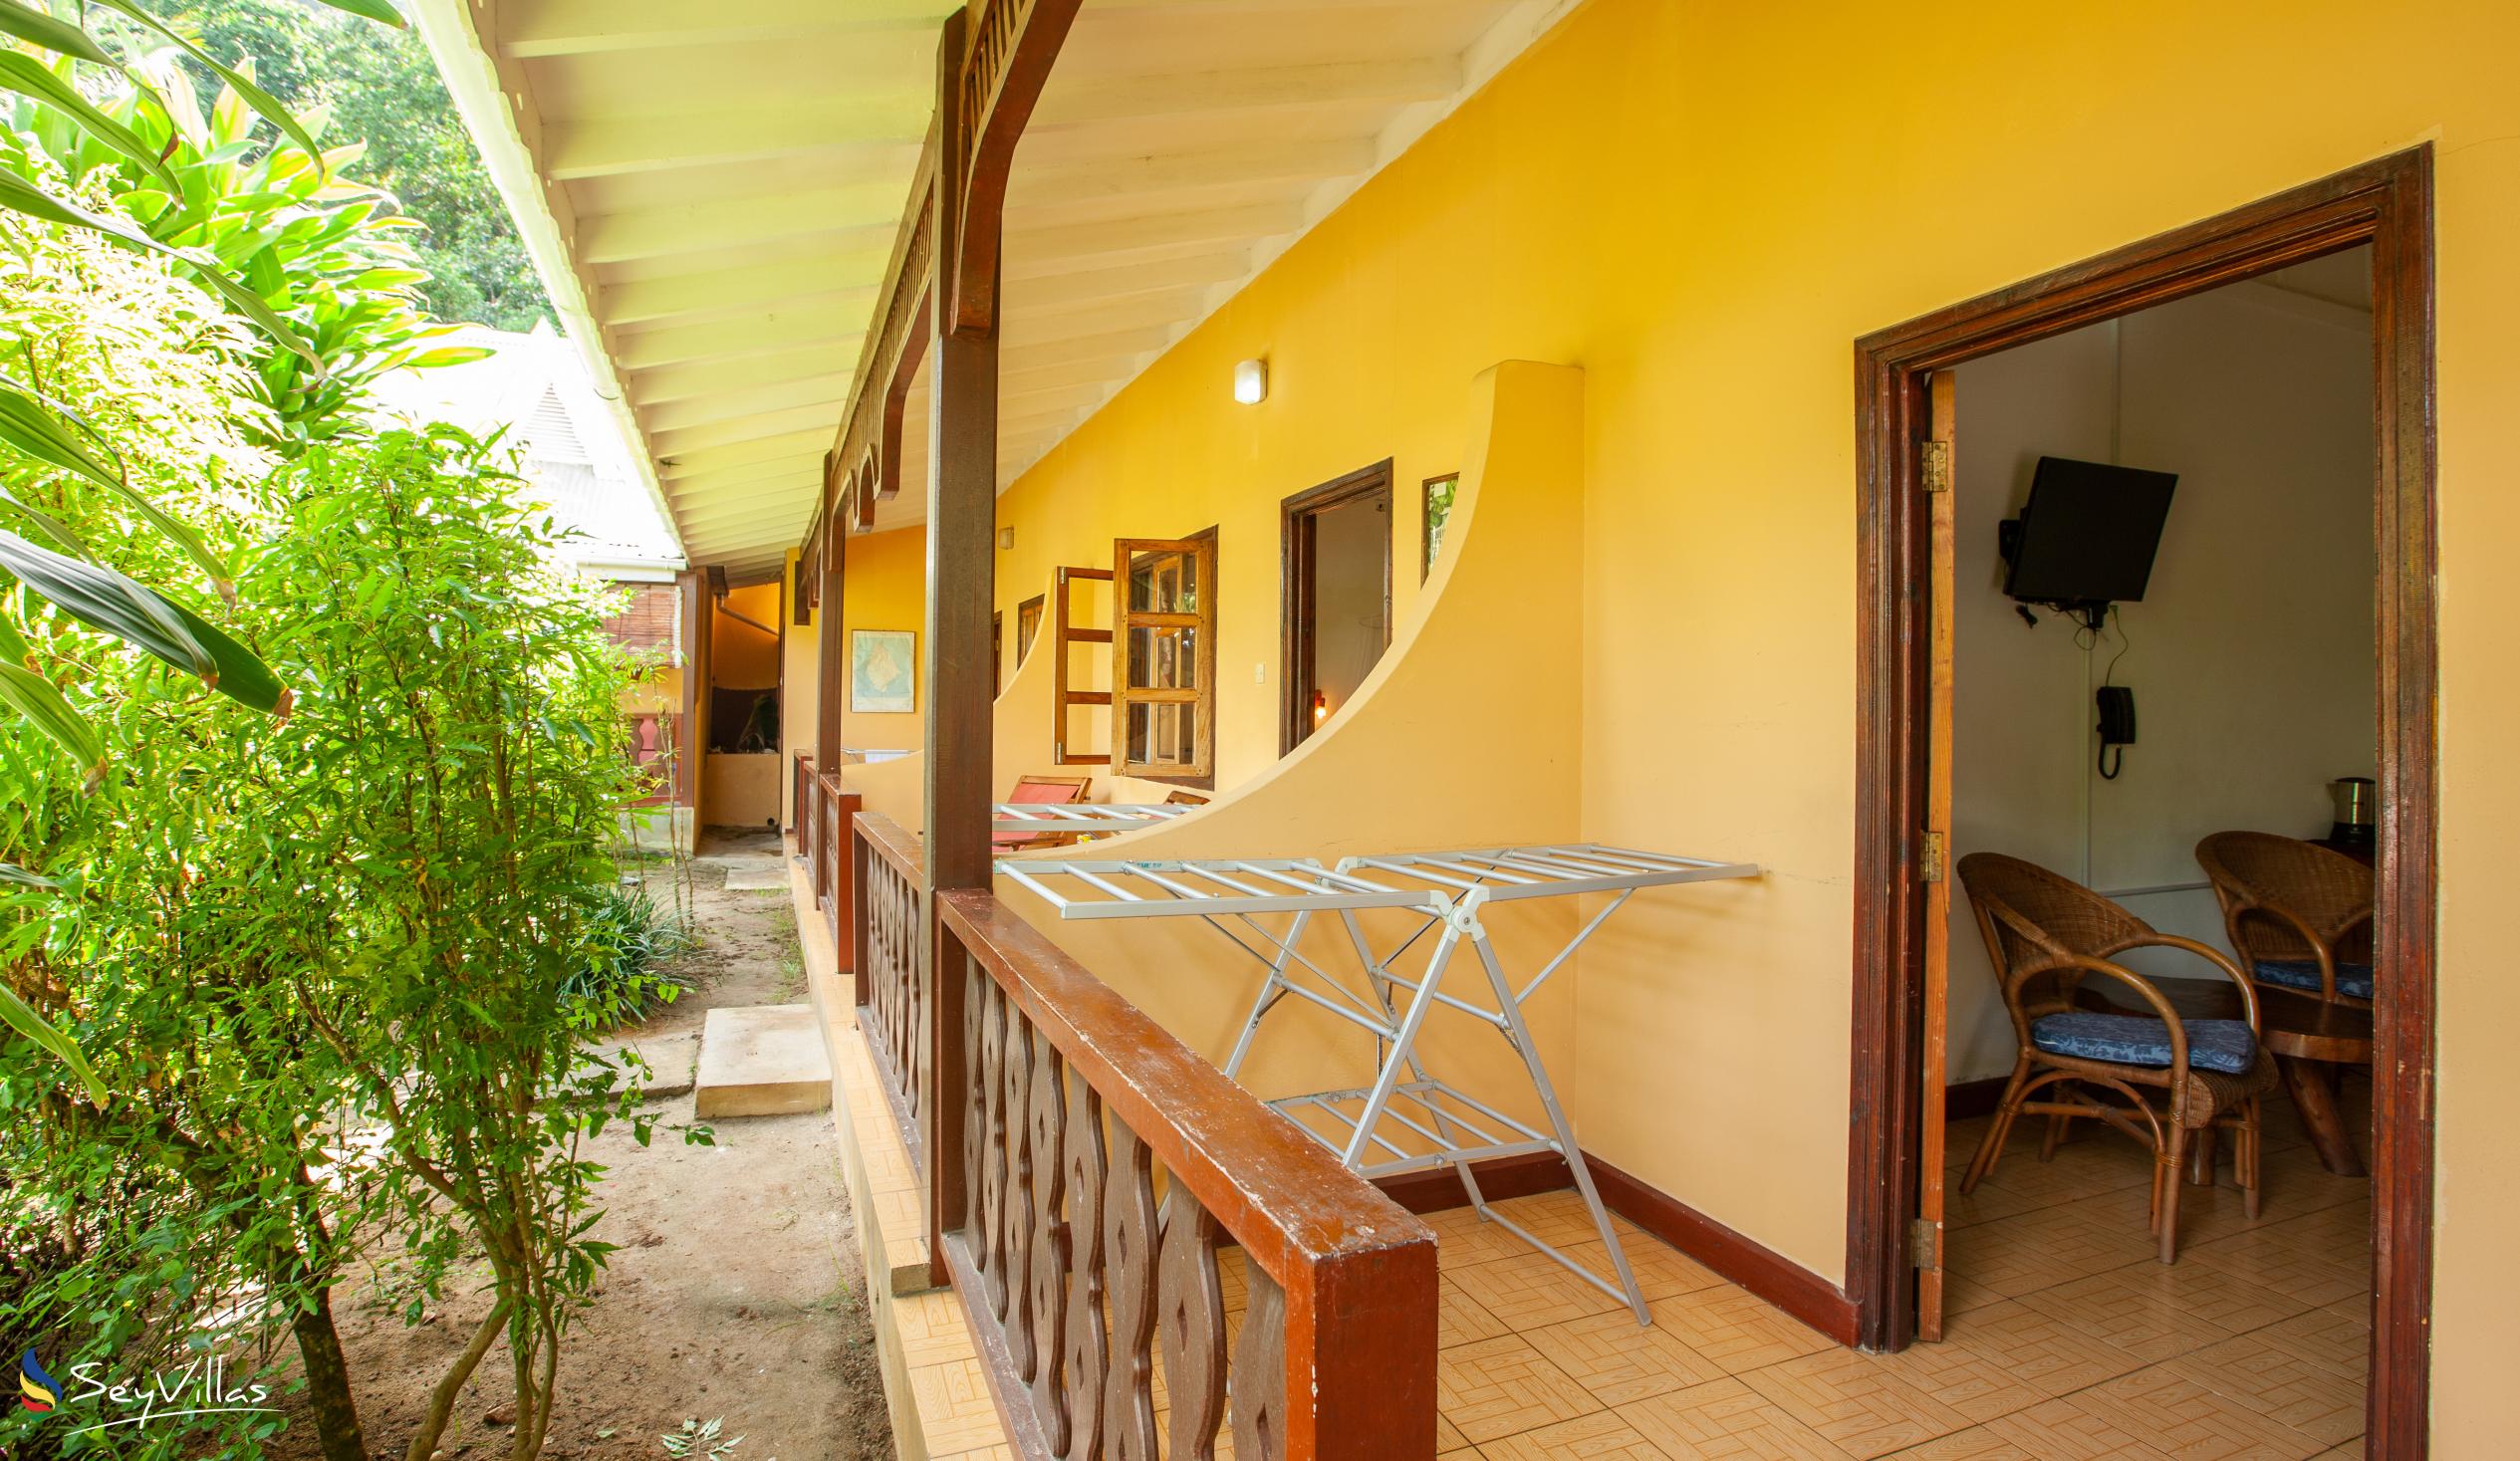 Photo 61: Bernique Guesthouse - Standard Room - La Digue (Seychelles)